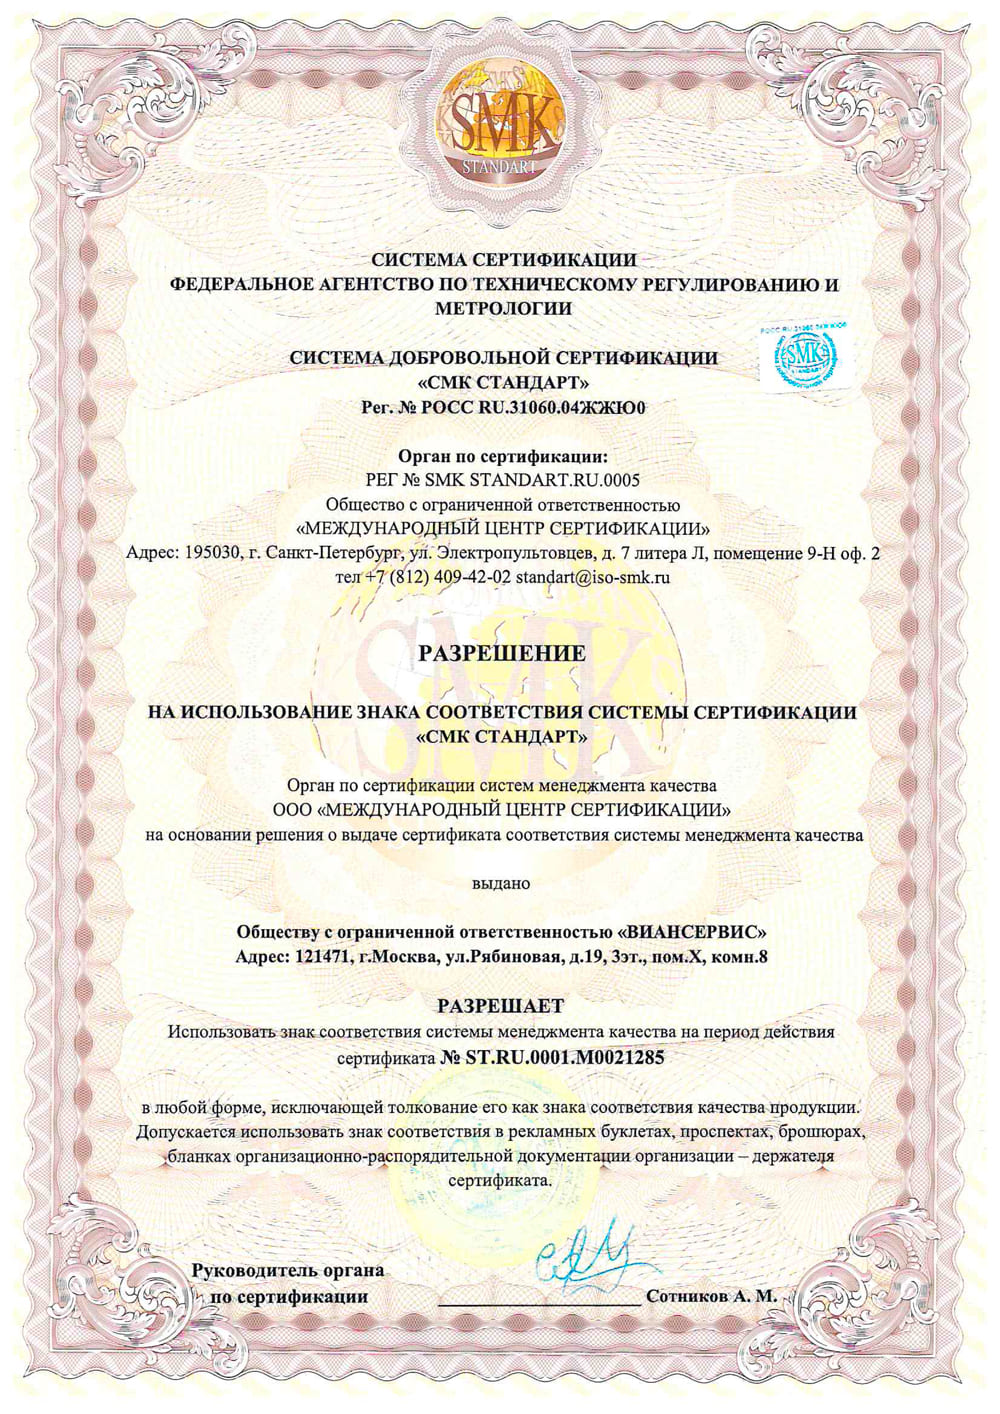 Разрешение на использование знака соответствия системы сертификации "СМК СТАНДАРТ"